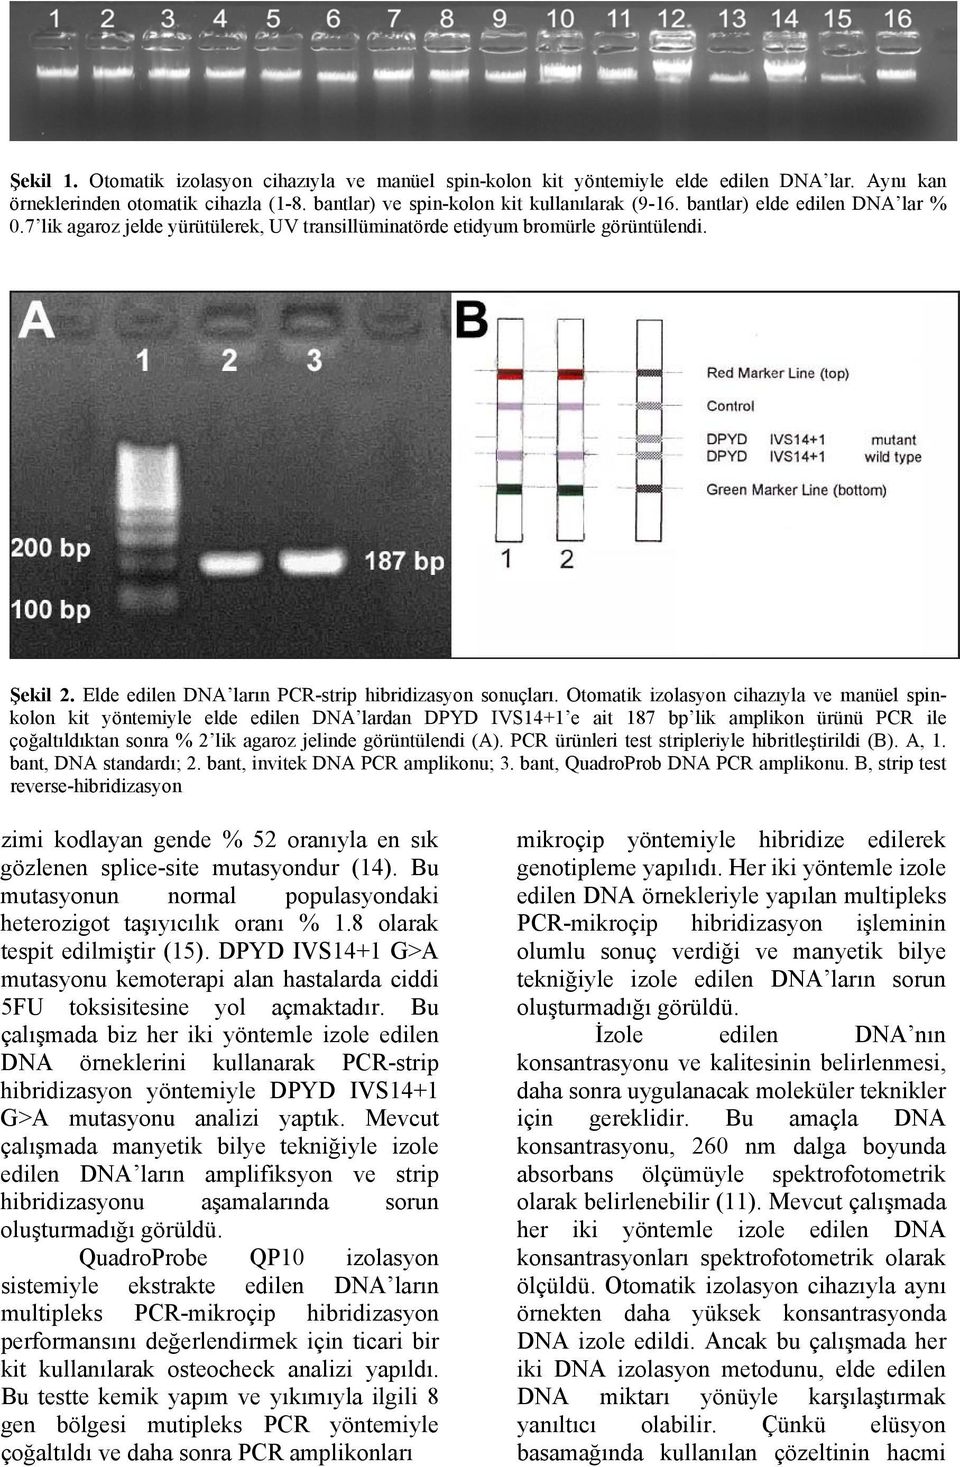 Otomatik izolasyon cihazıyla ve manüel spinkolon kit yöntemiyle elde edilen DNA lardan DPYD IVS14+1 e ait 187 bp lik amplikon ürünü PCR ile çoğaltıldıktan sonra % 2 lik agaroz jelinde görüntülendi